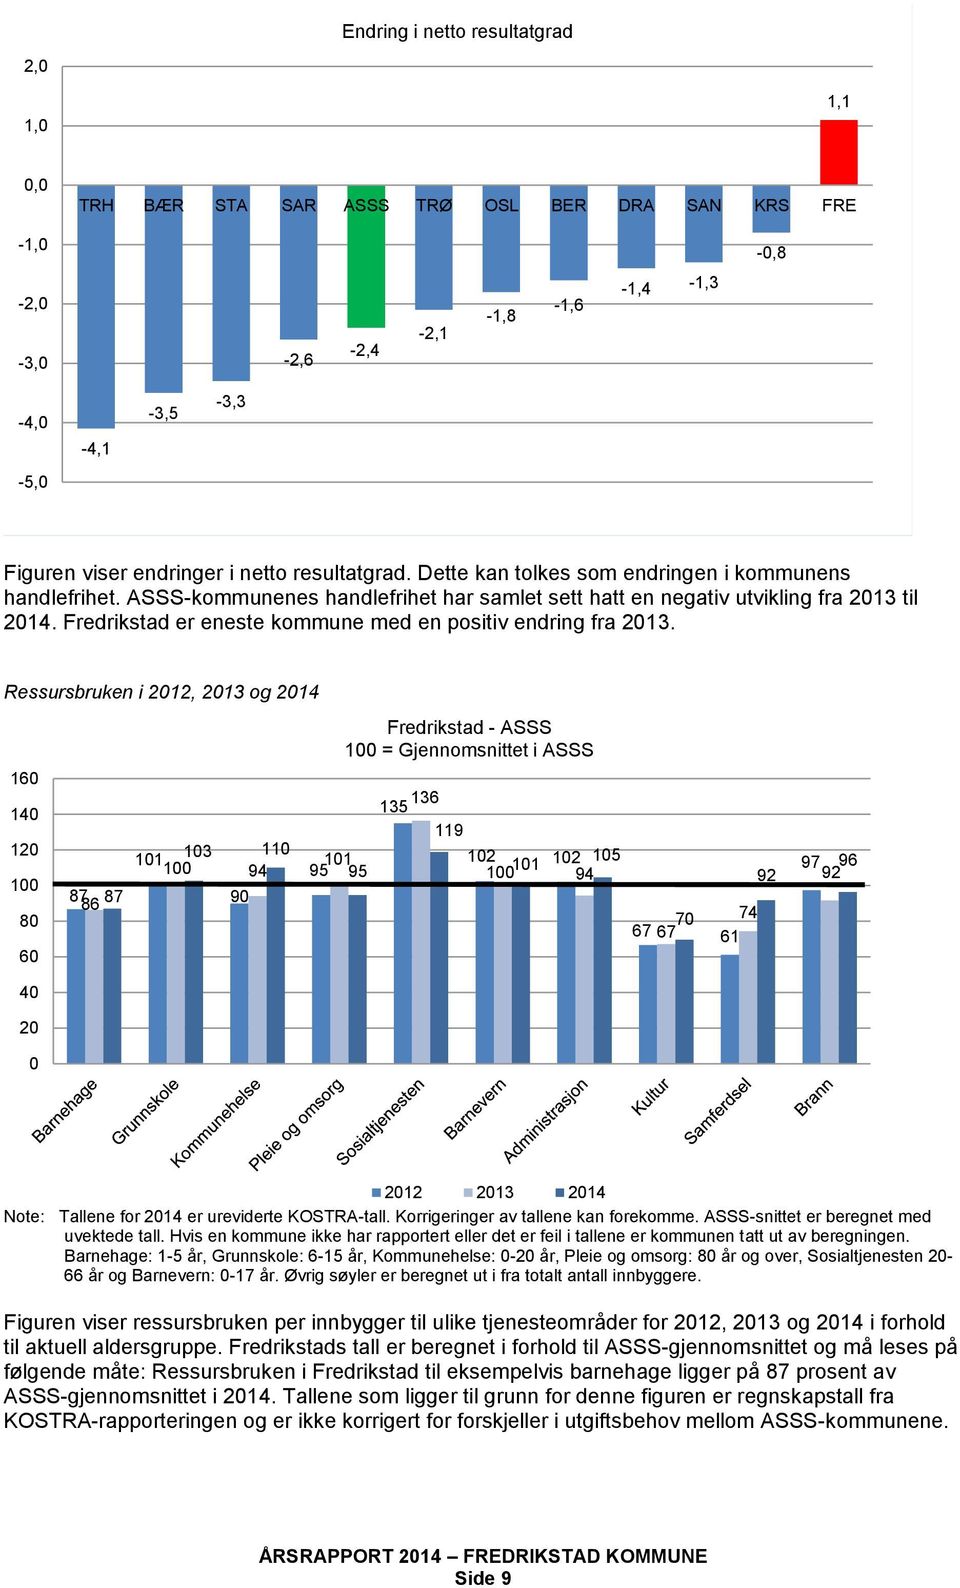 Fredrikstad er eneste kommune med en positiv endring fra 2013.